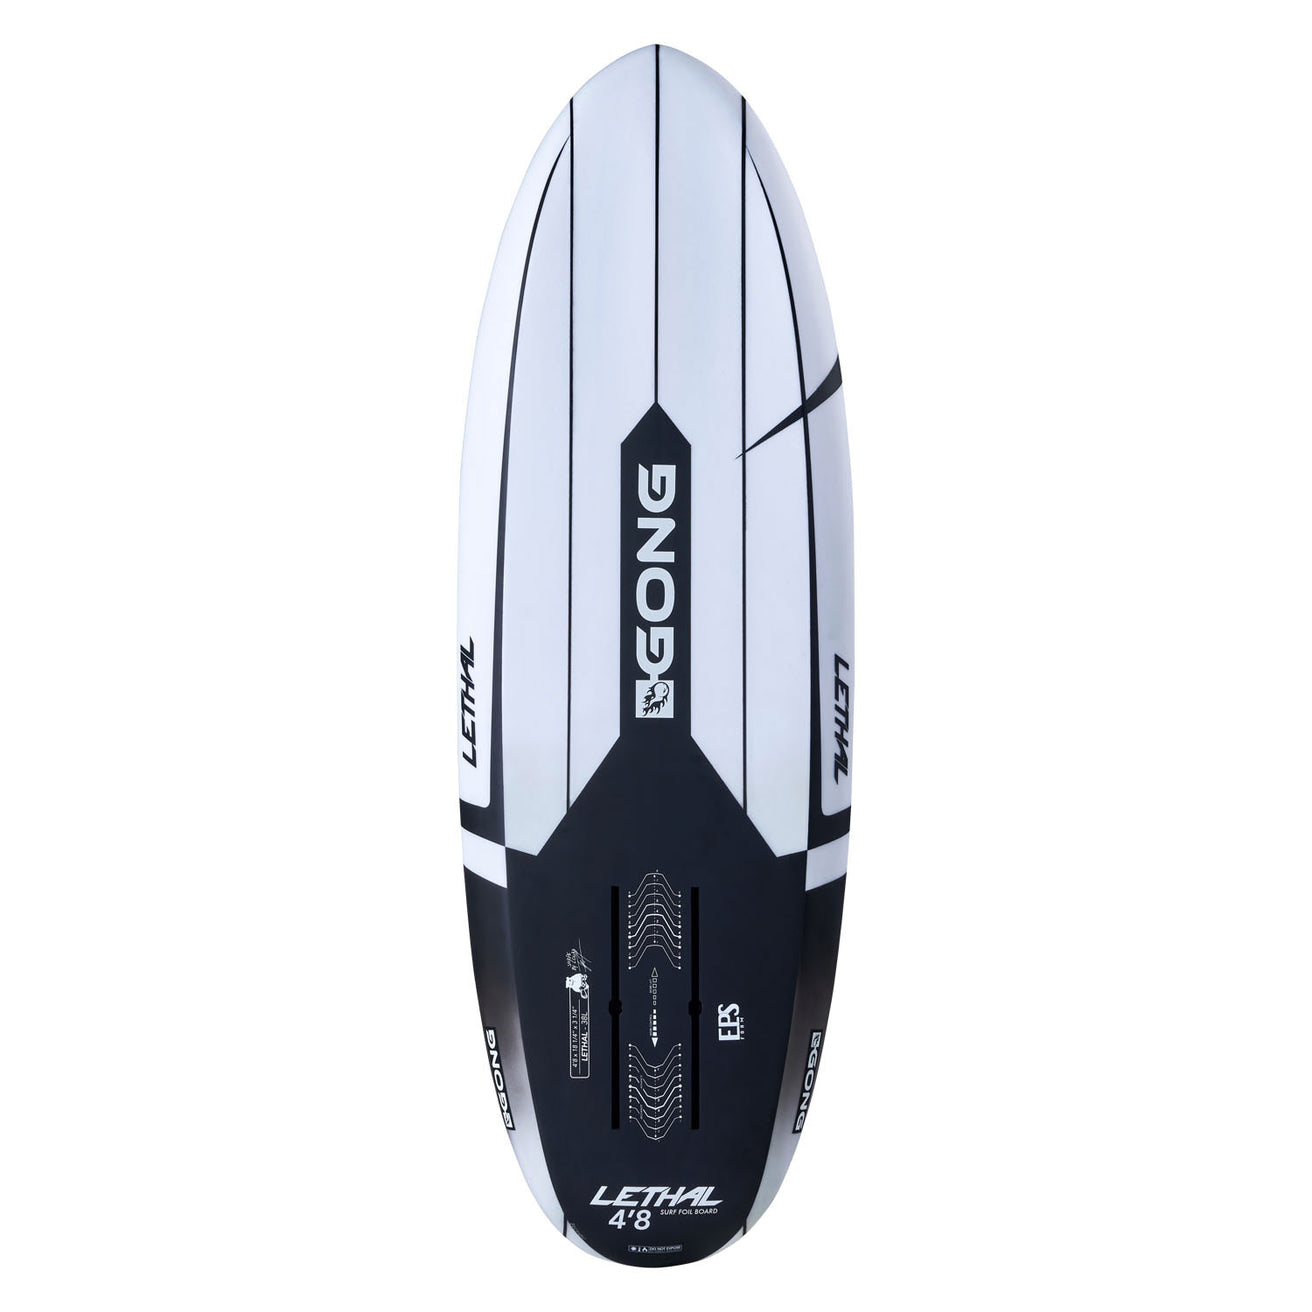 GONG | Surf Foil Board Lethal EPS